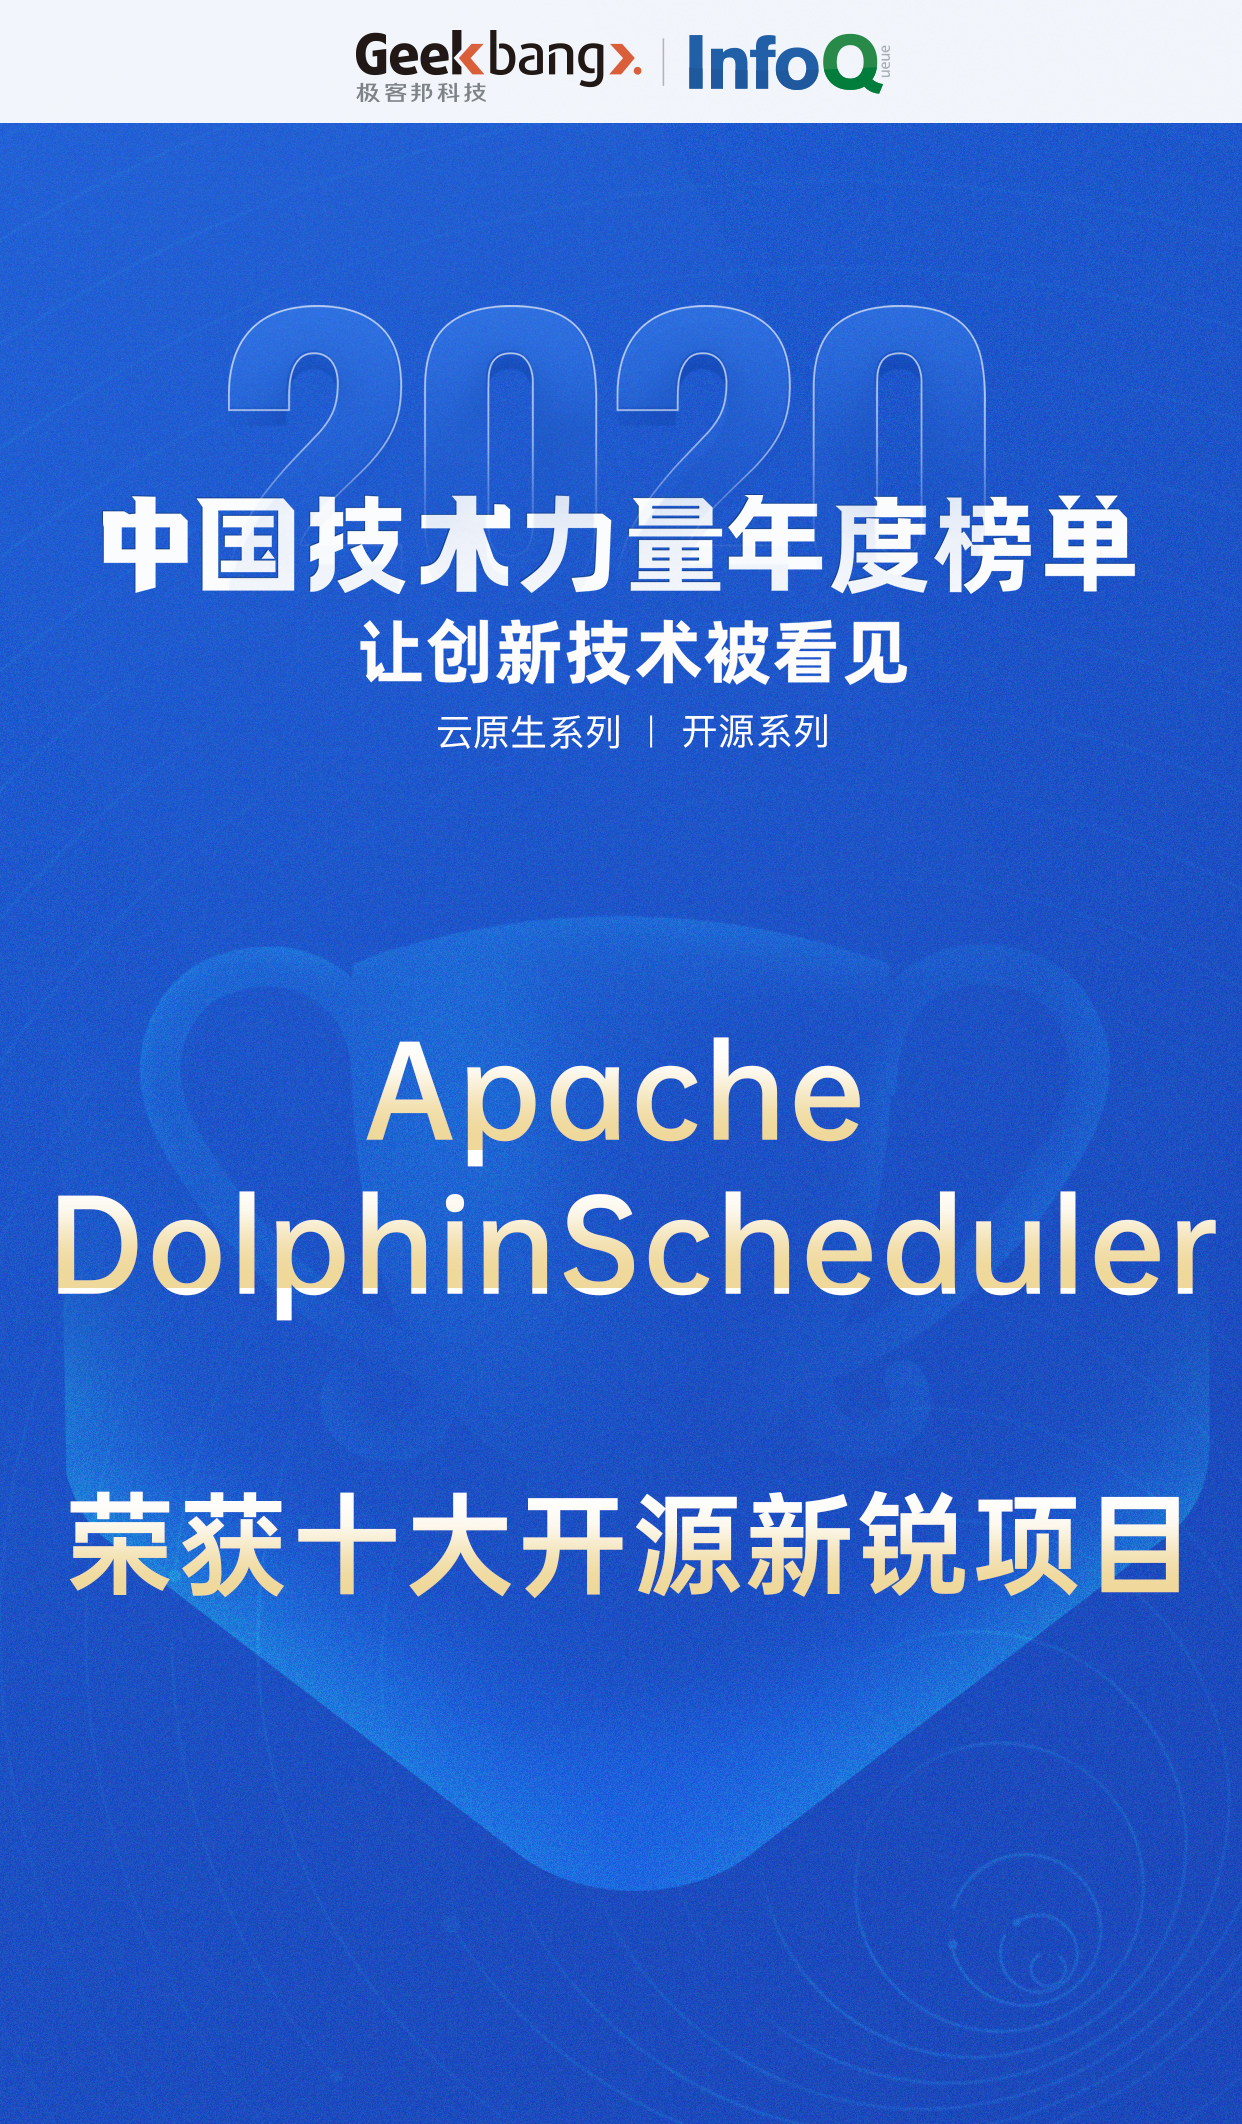 【喜讯】Apache DolphinScheduler 荣获 “2020 年度十大开源新锐项目”